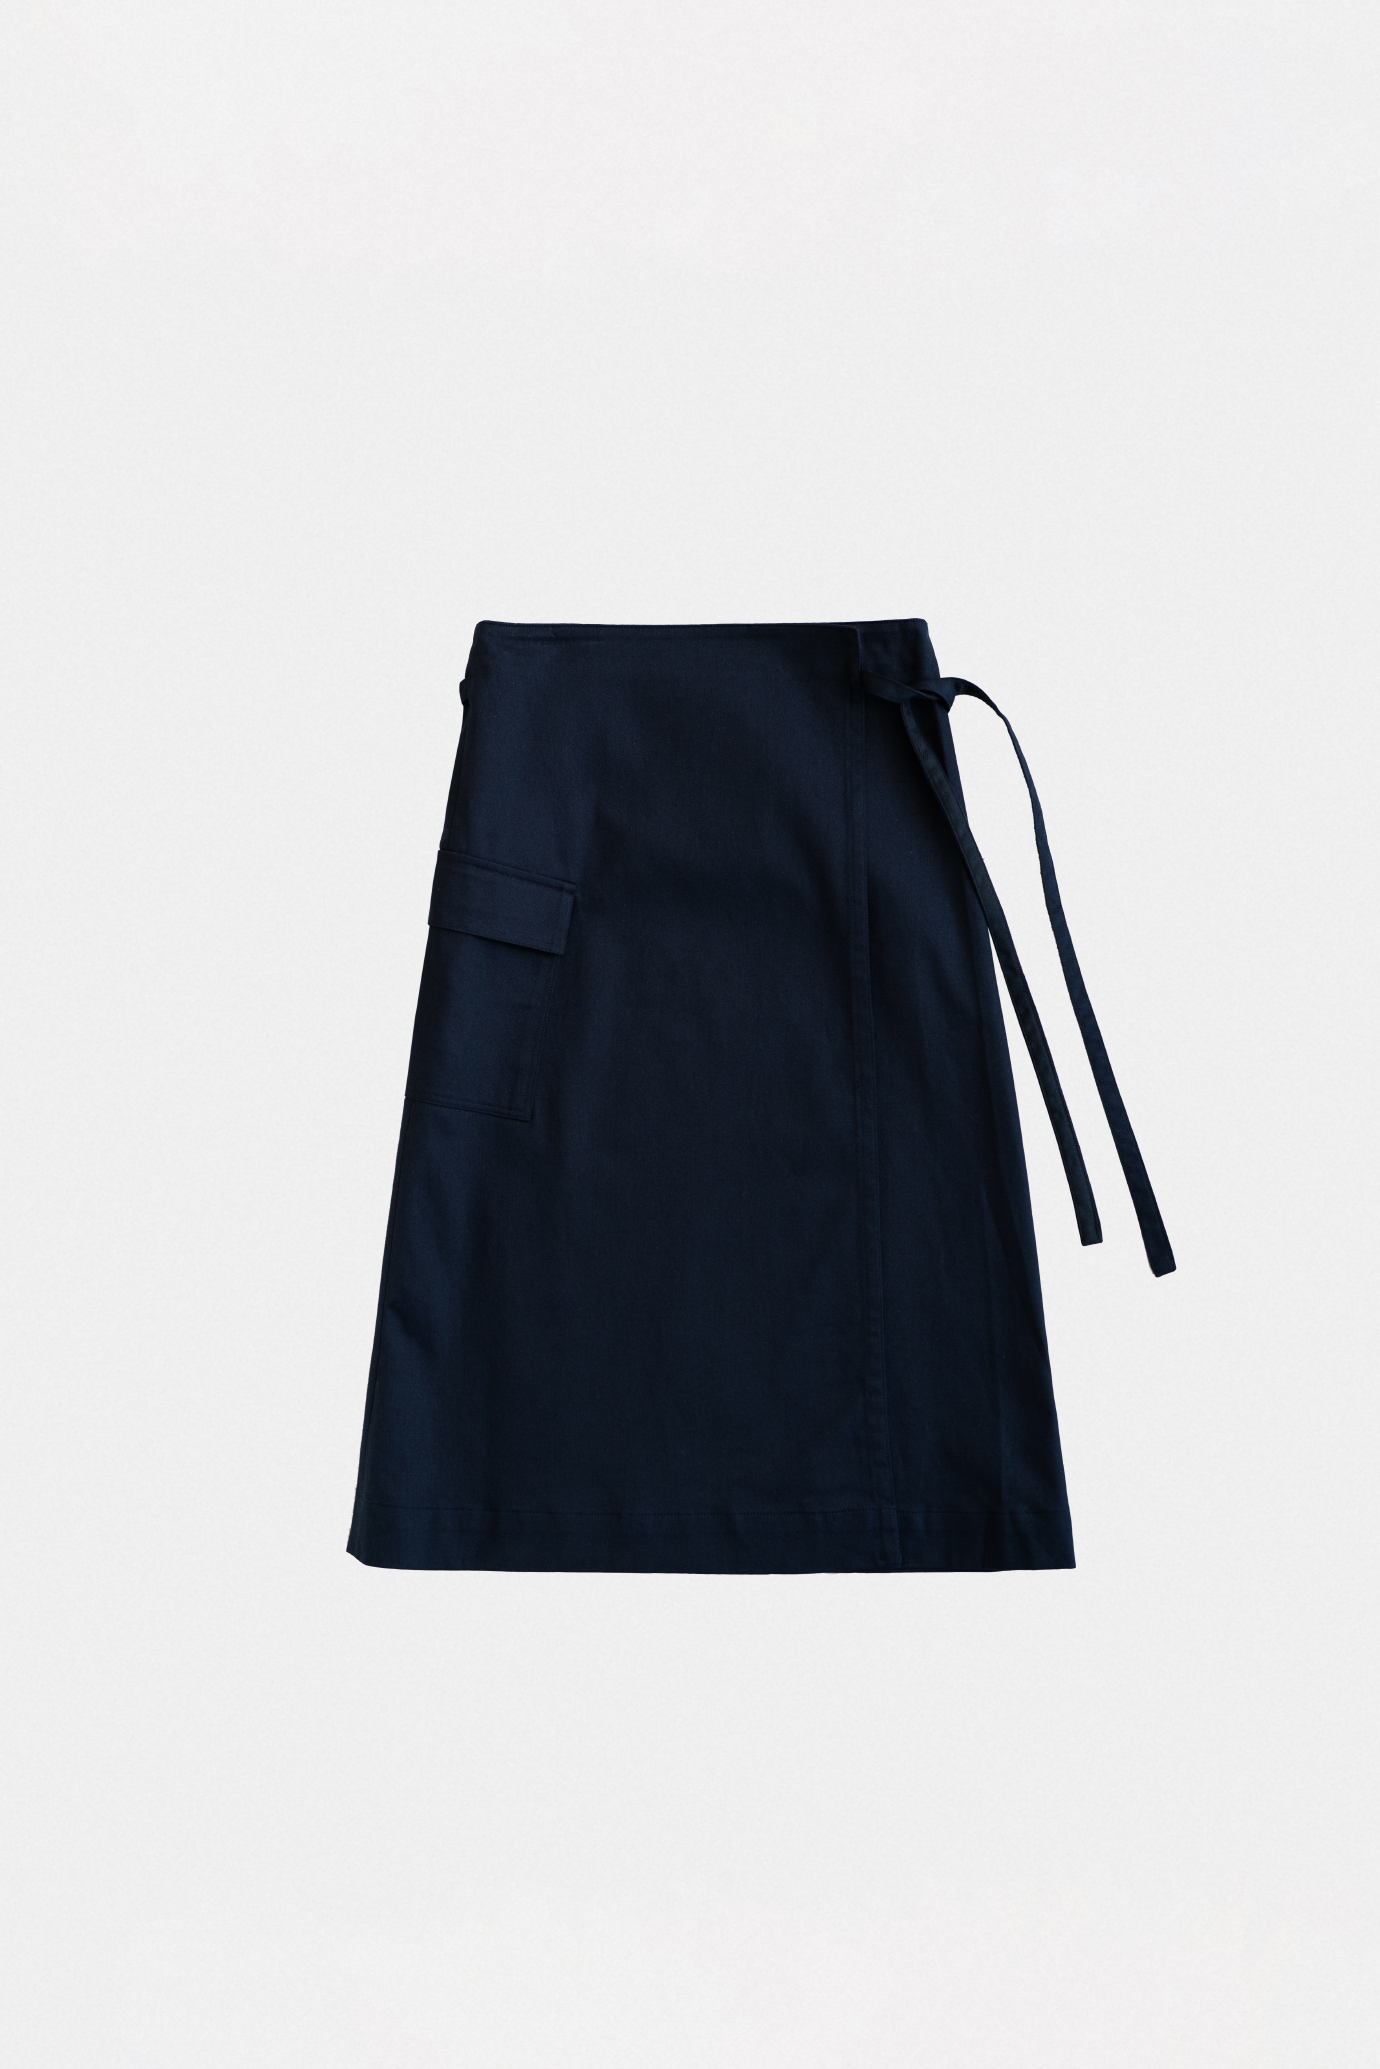 19015_Navy Wrap skirt